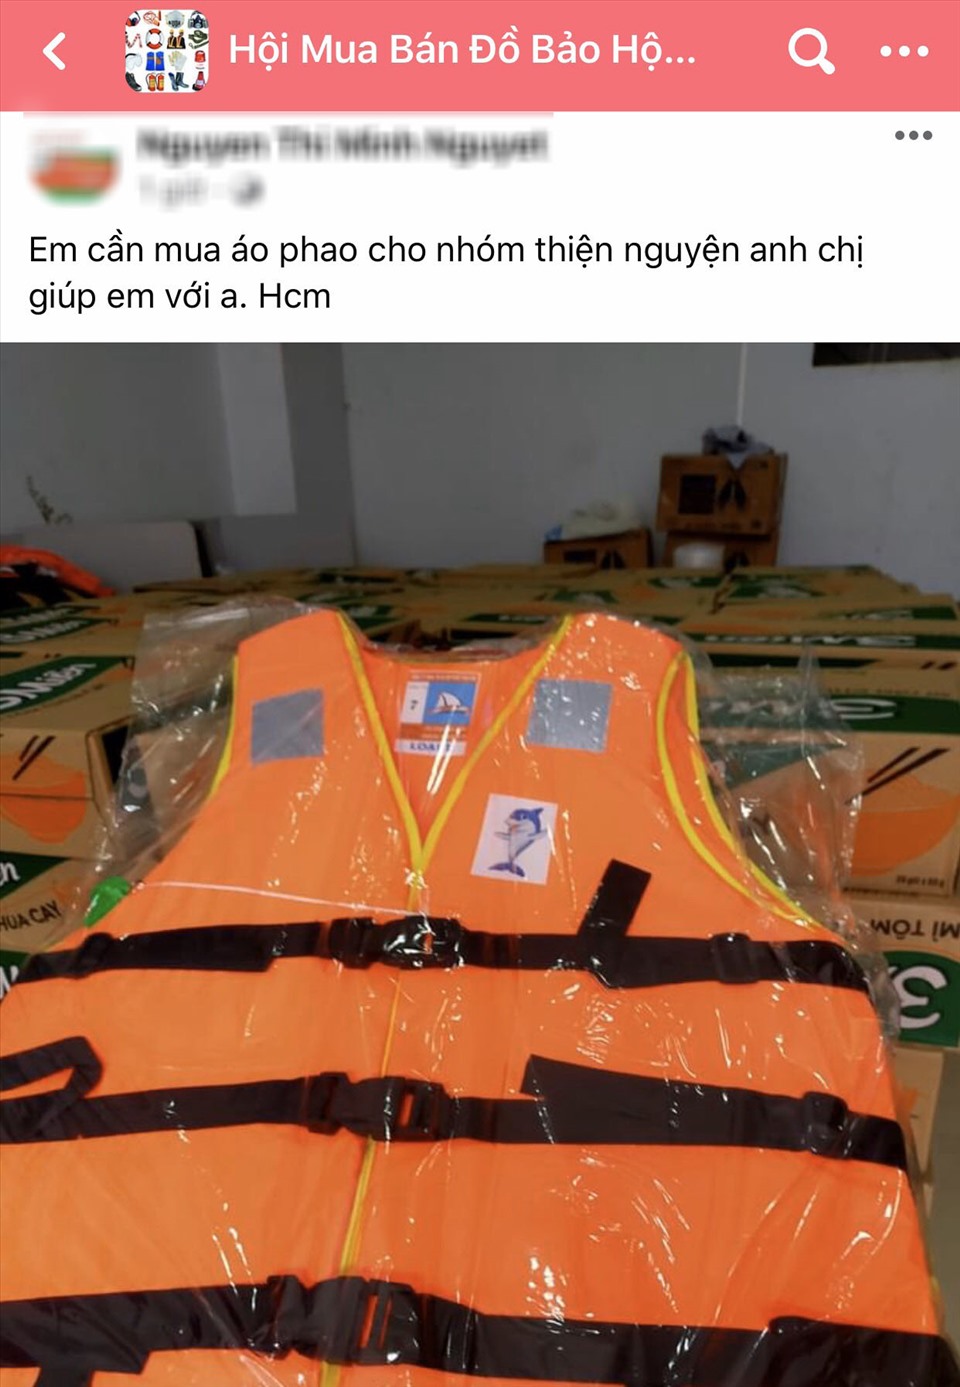 Nhiều nhóm từ thiện đang tìm mua áo phao gửi vào cứu trợ miền Trung nhưng không có. Ảnh: Chụp màn hình